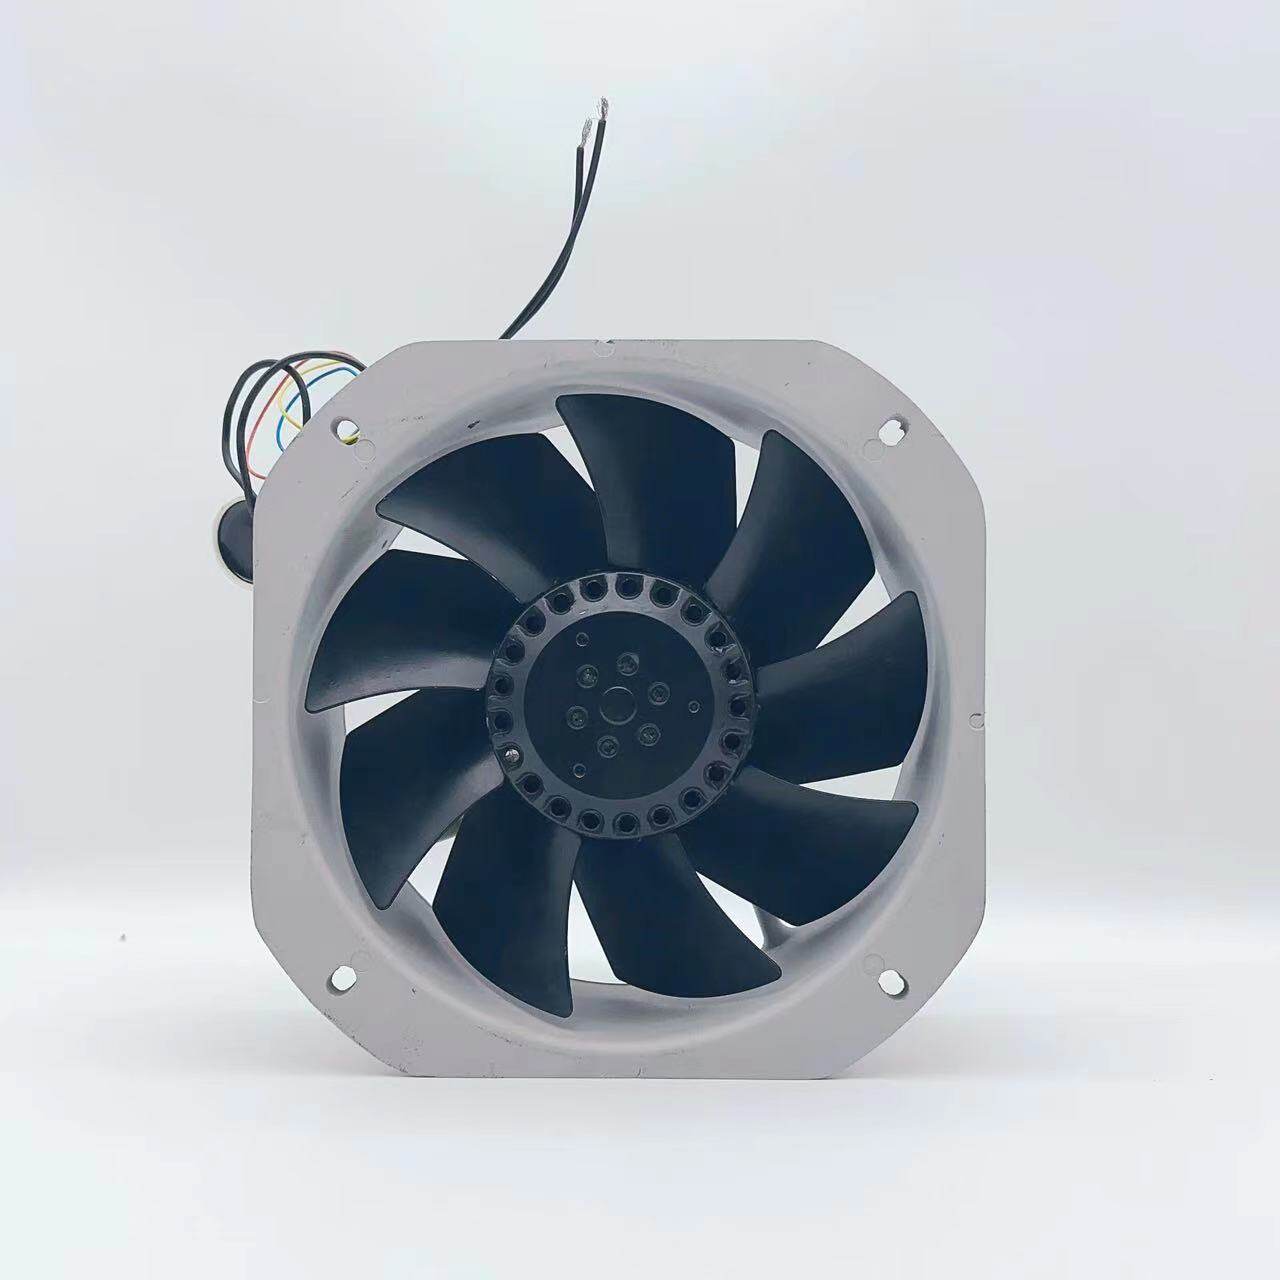 External rotor axial flow fan